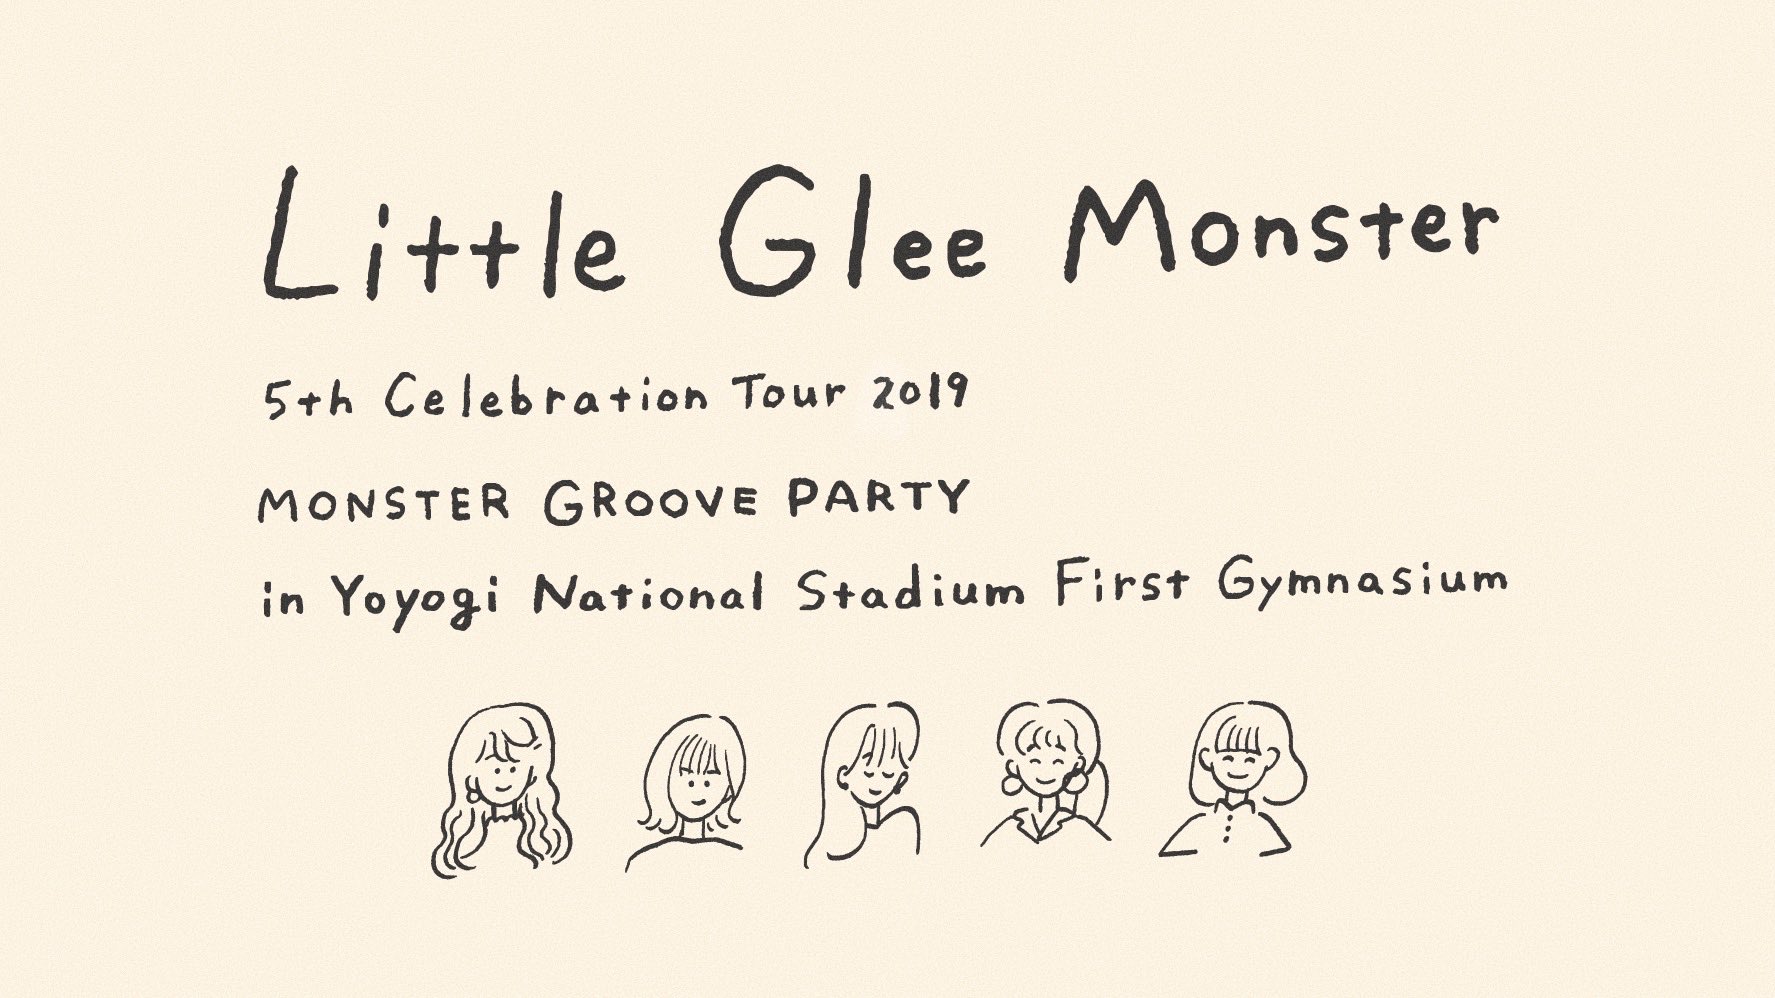 てらおかなつみ9 5 10 2東京個展 Little Glee Monster 5周年記念グッズ タオル ロンt コーチジャケット デザインさせていただきました こだわりの大切なグッズができました 11 1 3 新国立代々木競技場でのツアーファイナルにて販売です 10 18